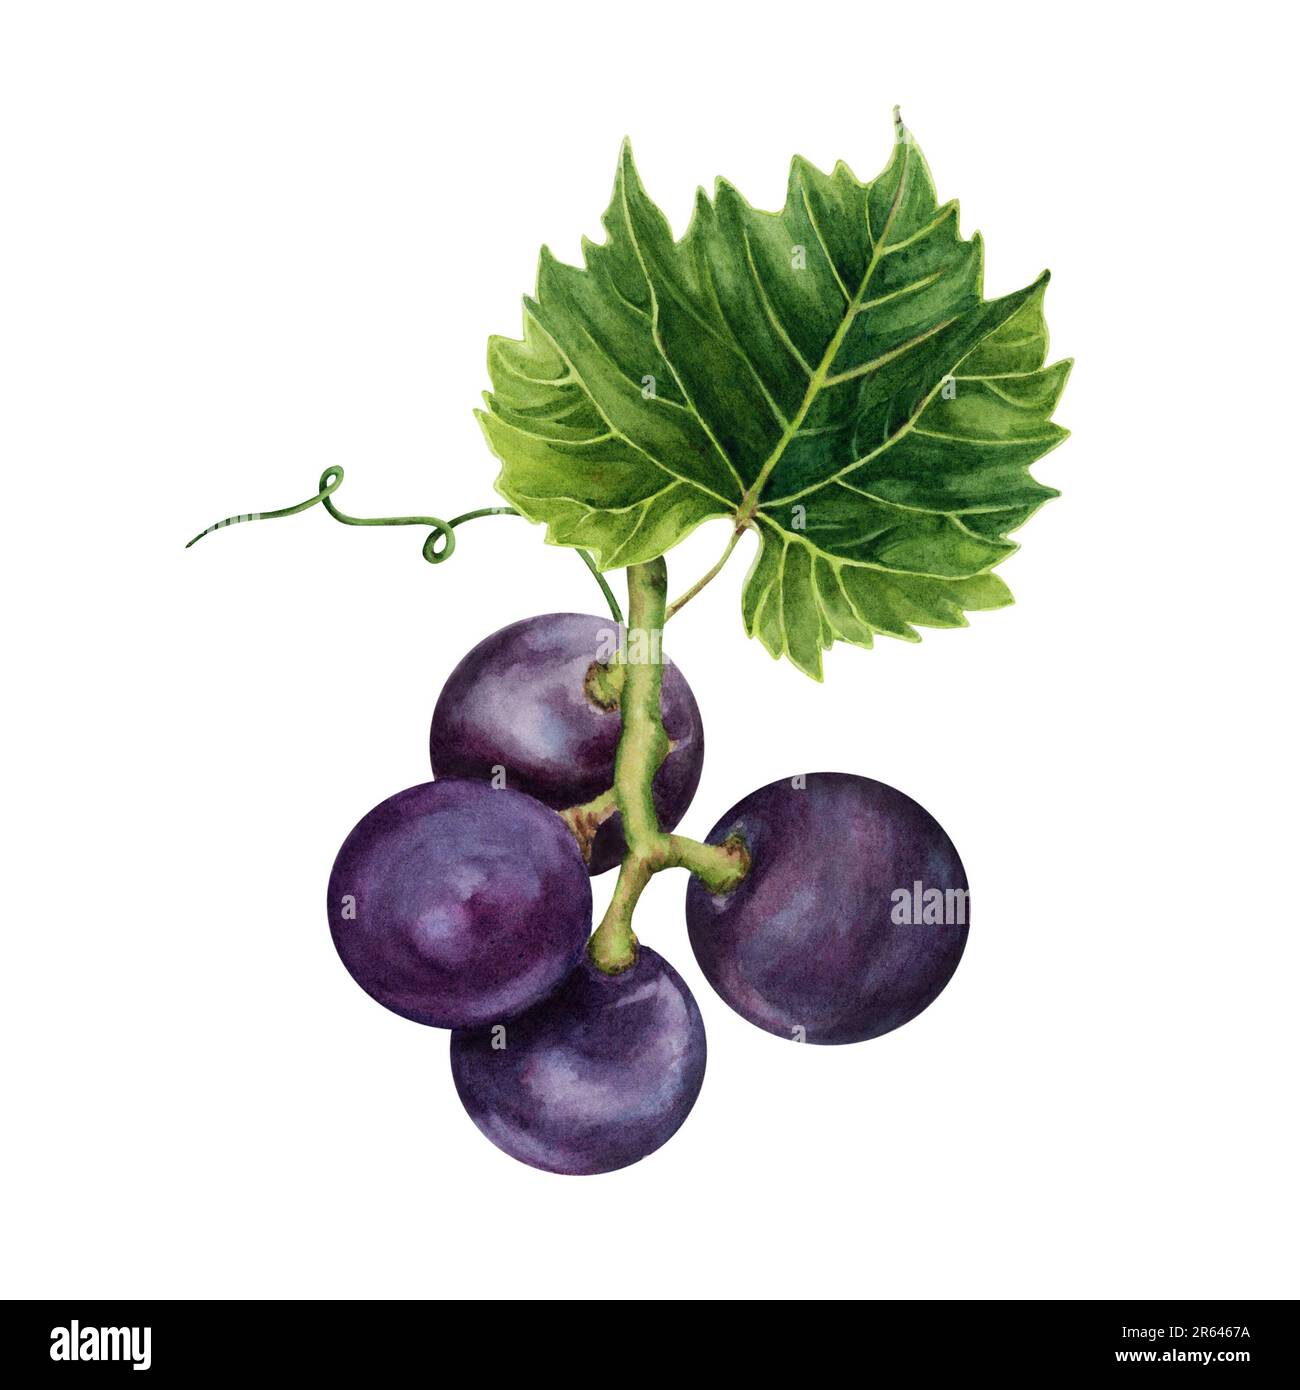 Bouquet de raisins violets avec une feuille de vigne verte. Illustration aquarelle dessinée à la main isolée sur fond blanc. Banque D'Images